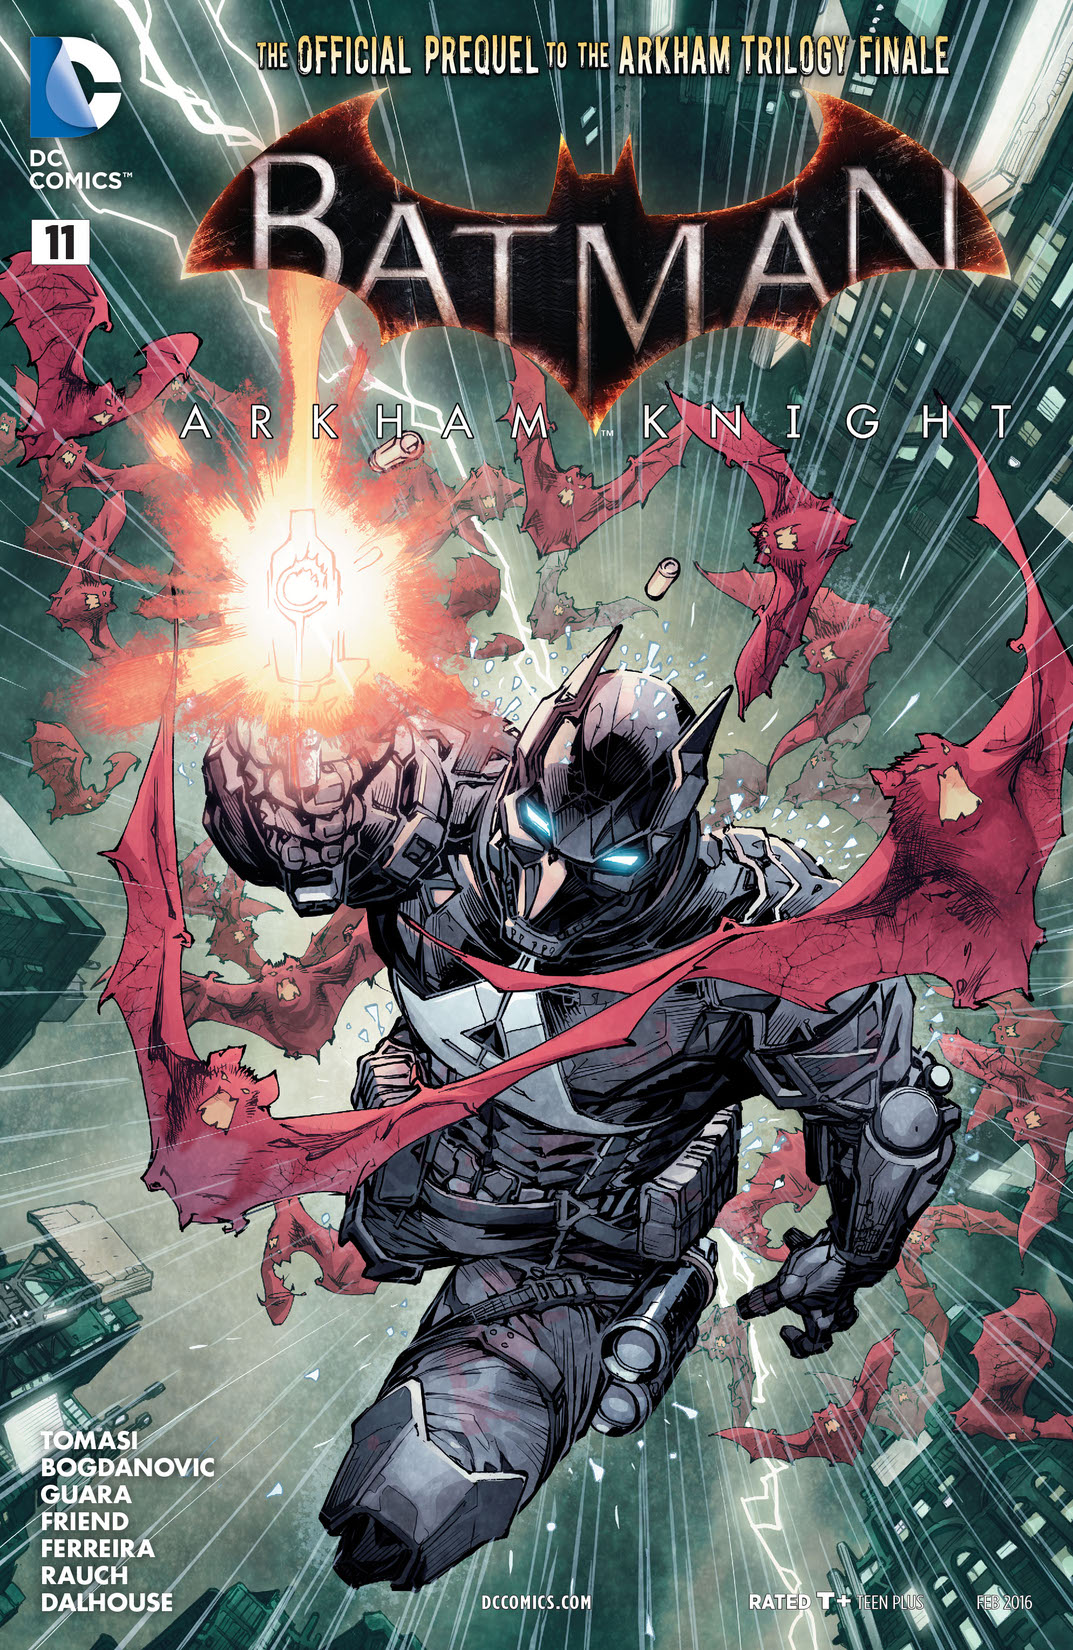 Batman: Arkham Knight #11 preview images